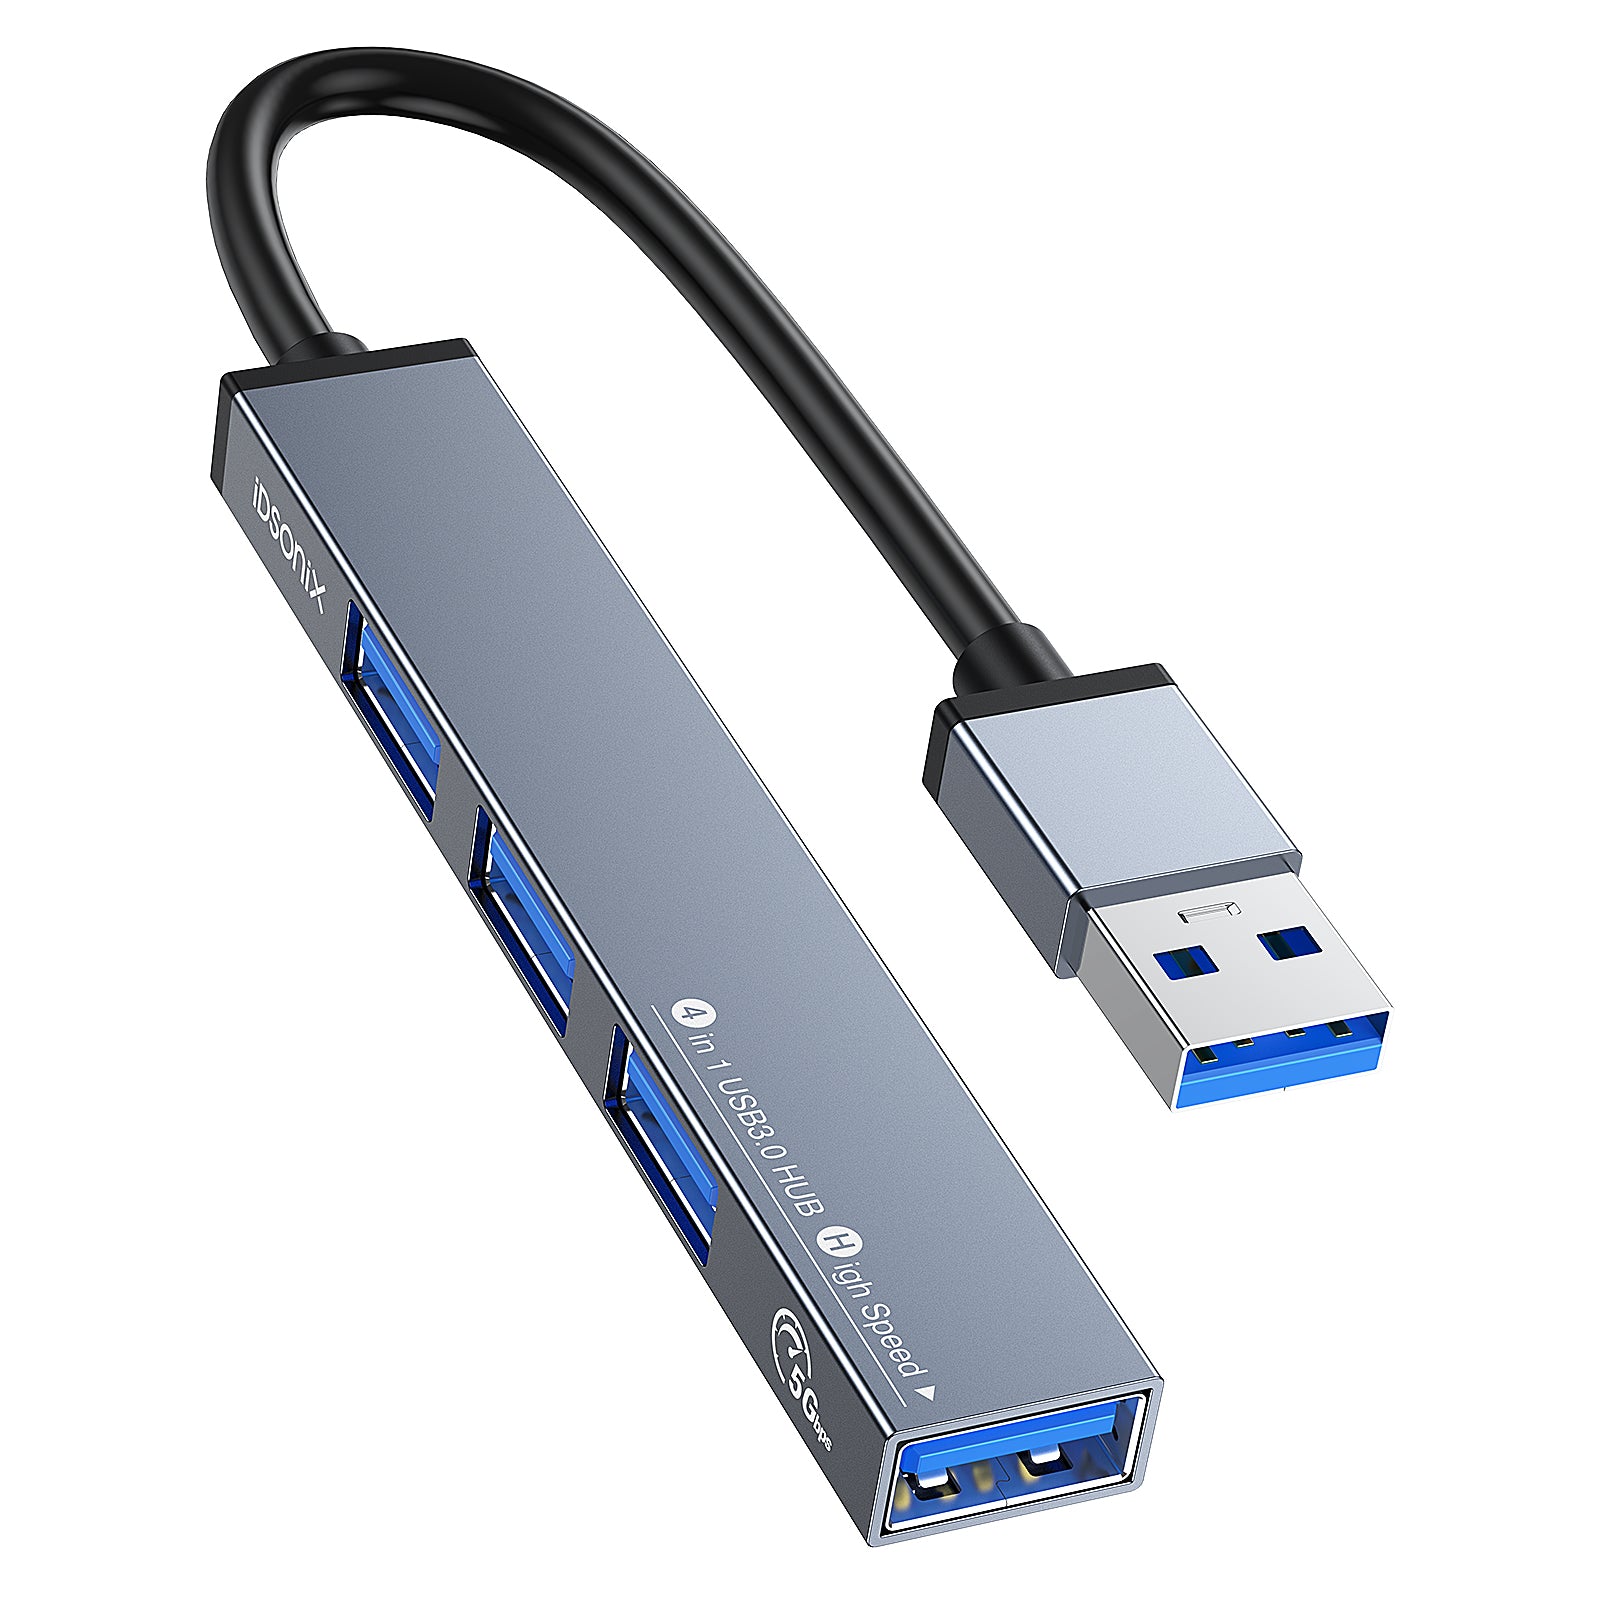 USB Hub, 4 Port USB 3.0 Hub, Ultra-Slim Portable Data Hub